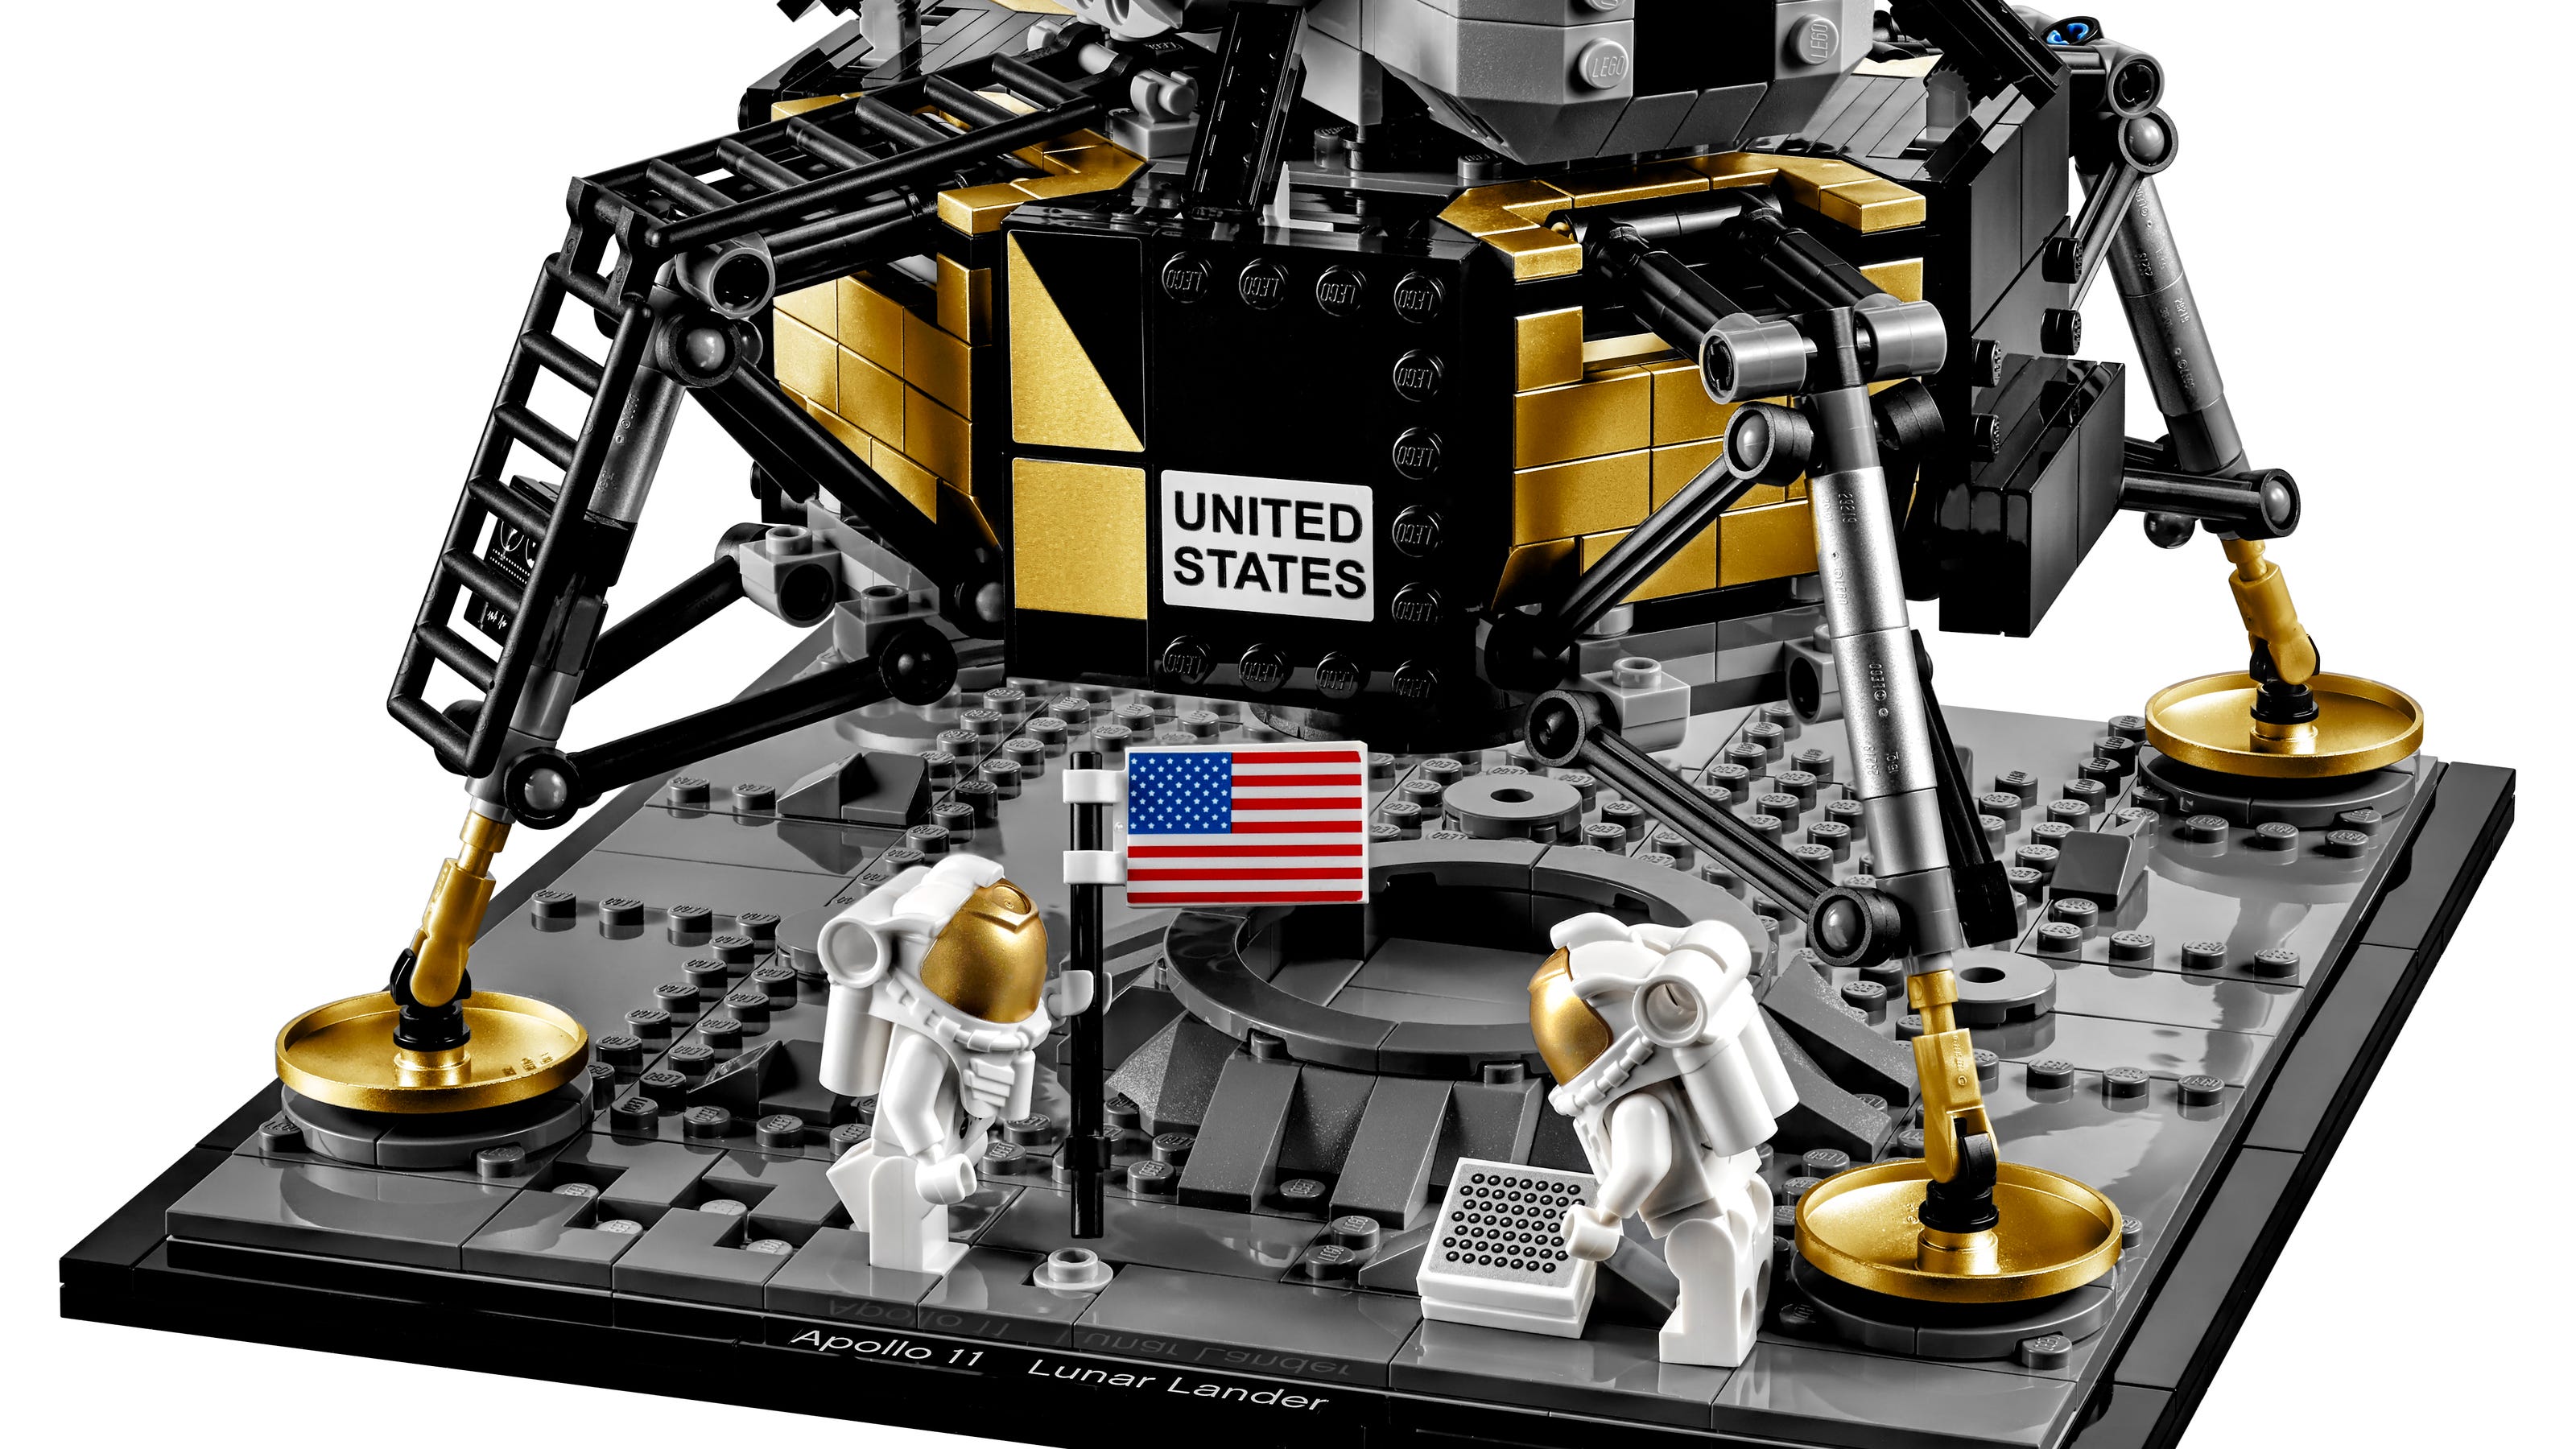 Lego releases 1,087-piece Apollo 11 lunar lander astronauts